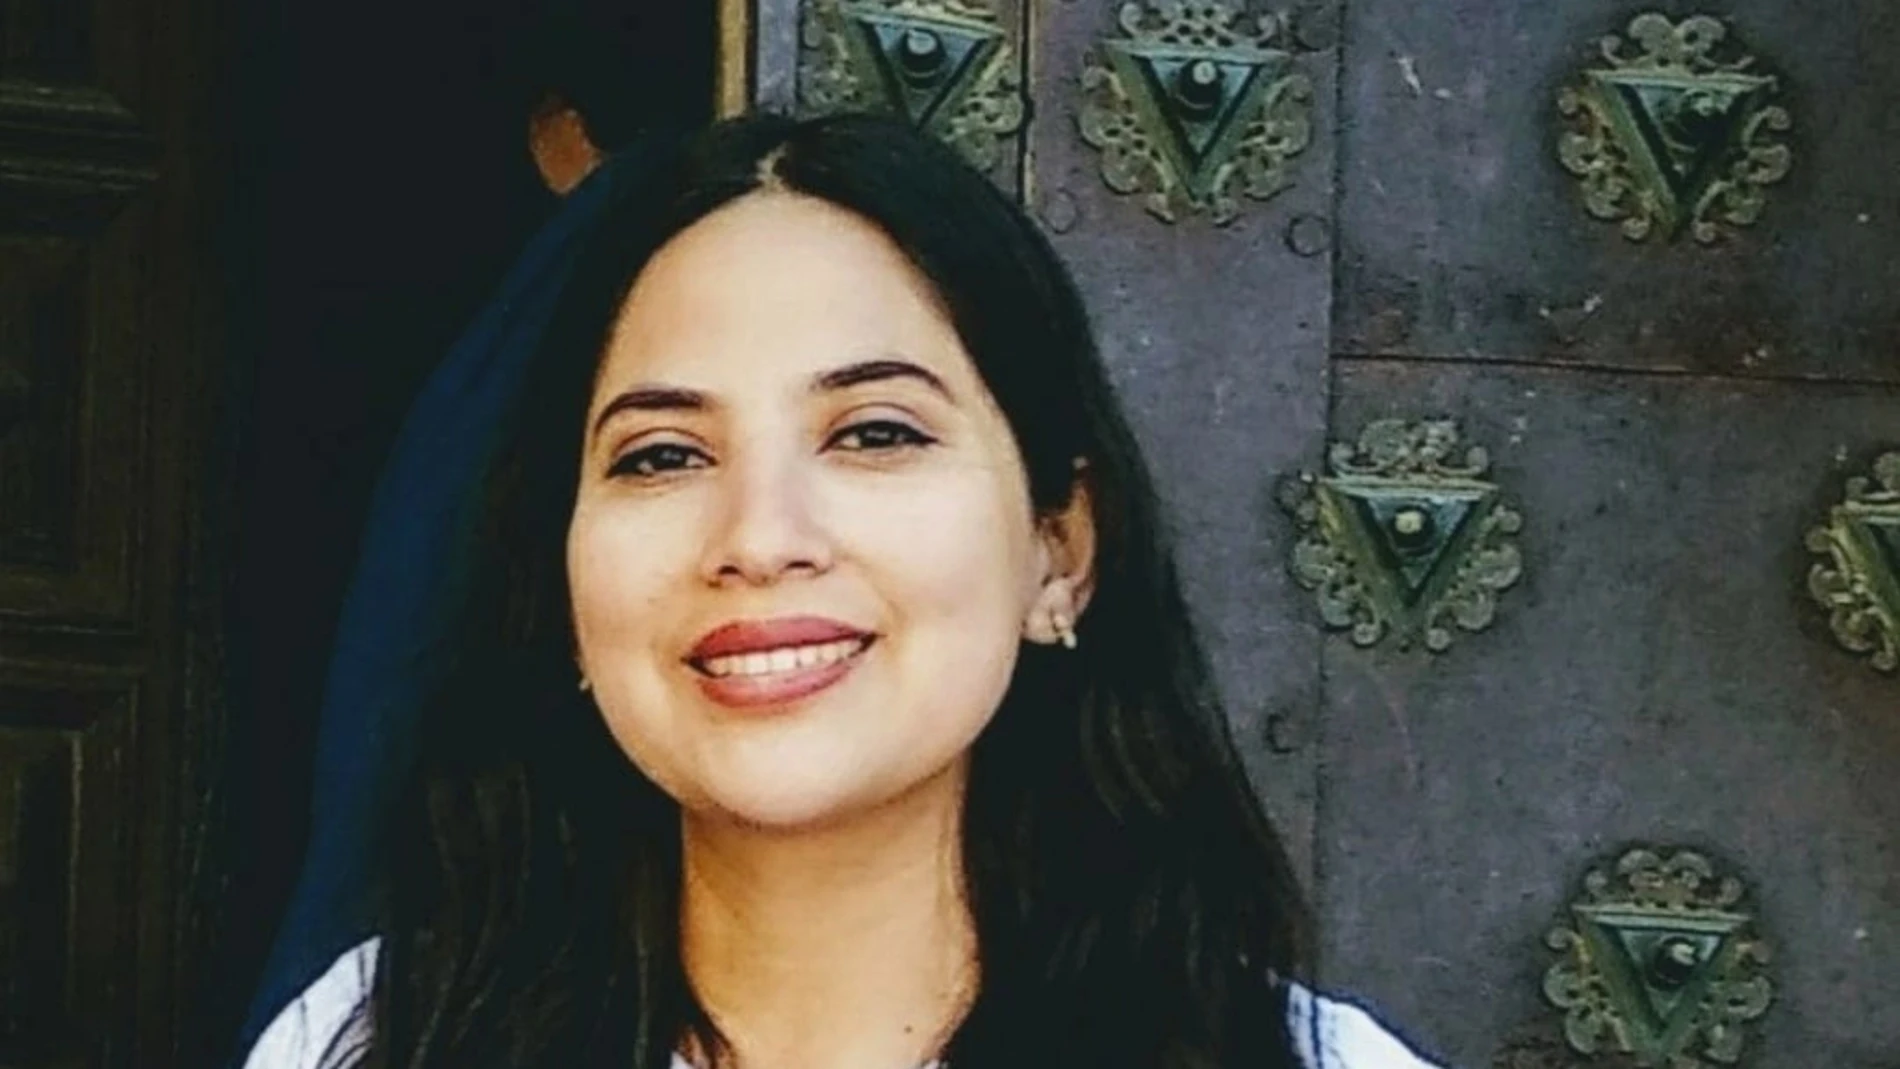 Nancy Paola tenía 29 años y vivía en España desde julio de 2018, su familia denunció su desaparición el pasado 26 de agosto